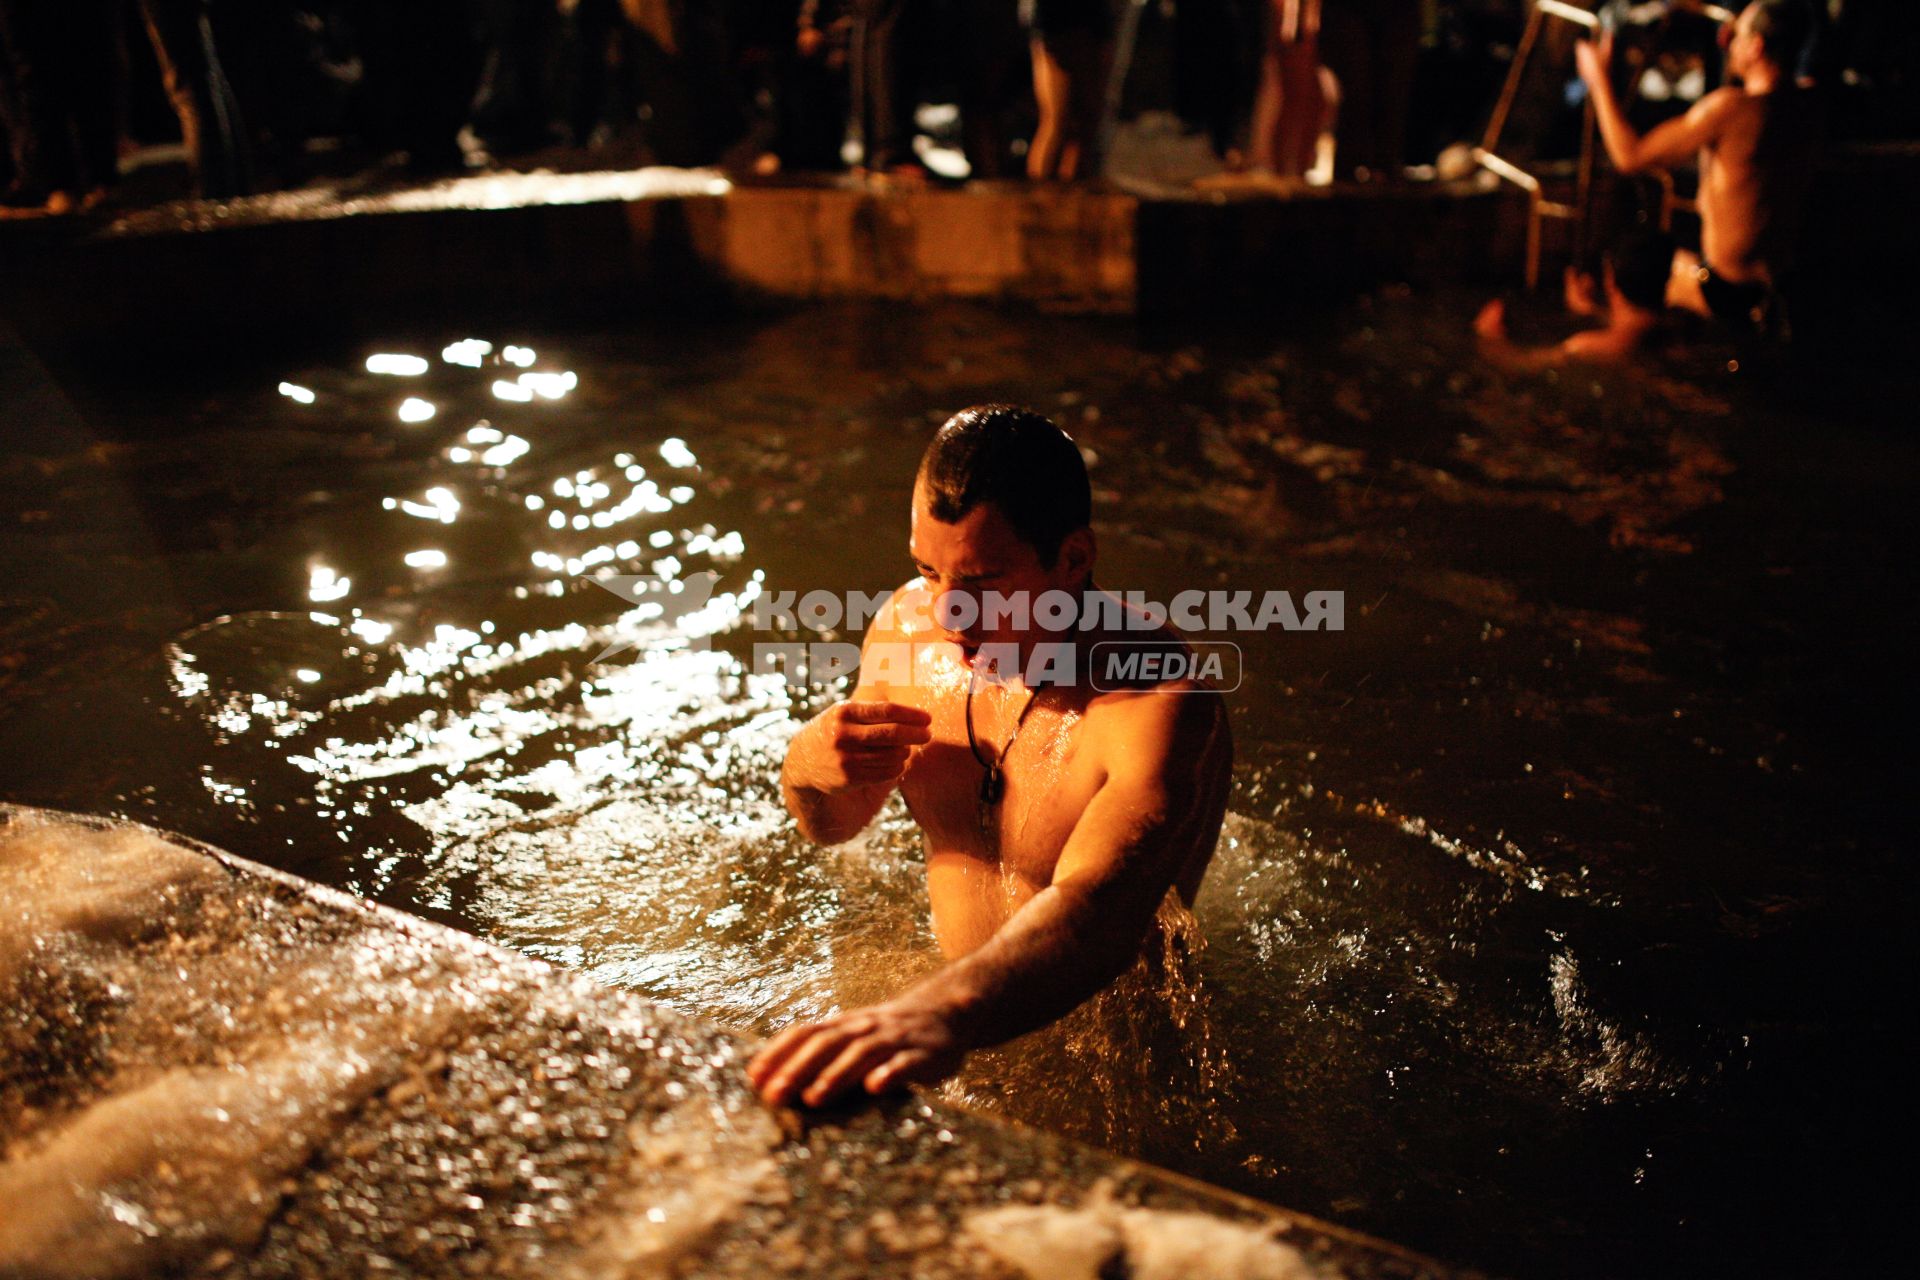 Крещенские купания в Ставрополе. На снимке: мужчина окунается в купели.